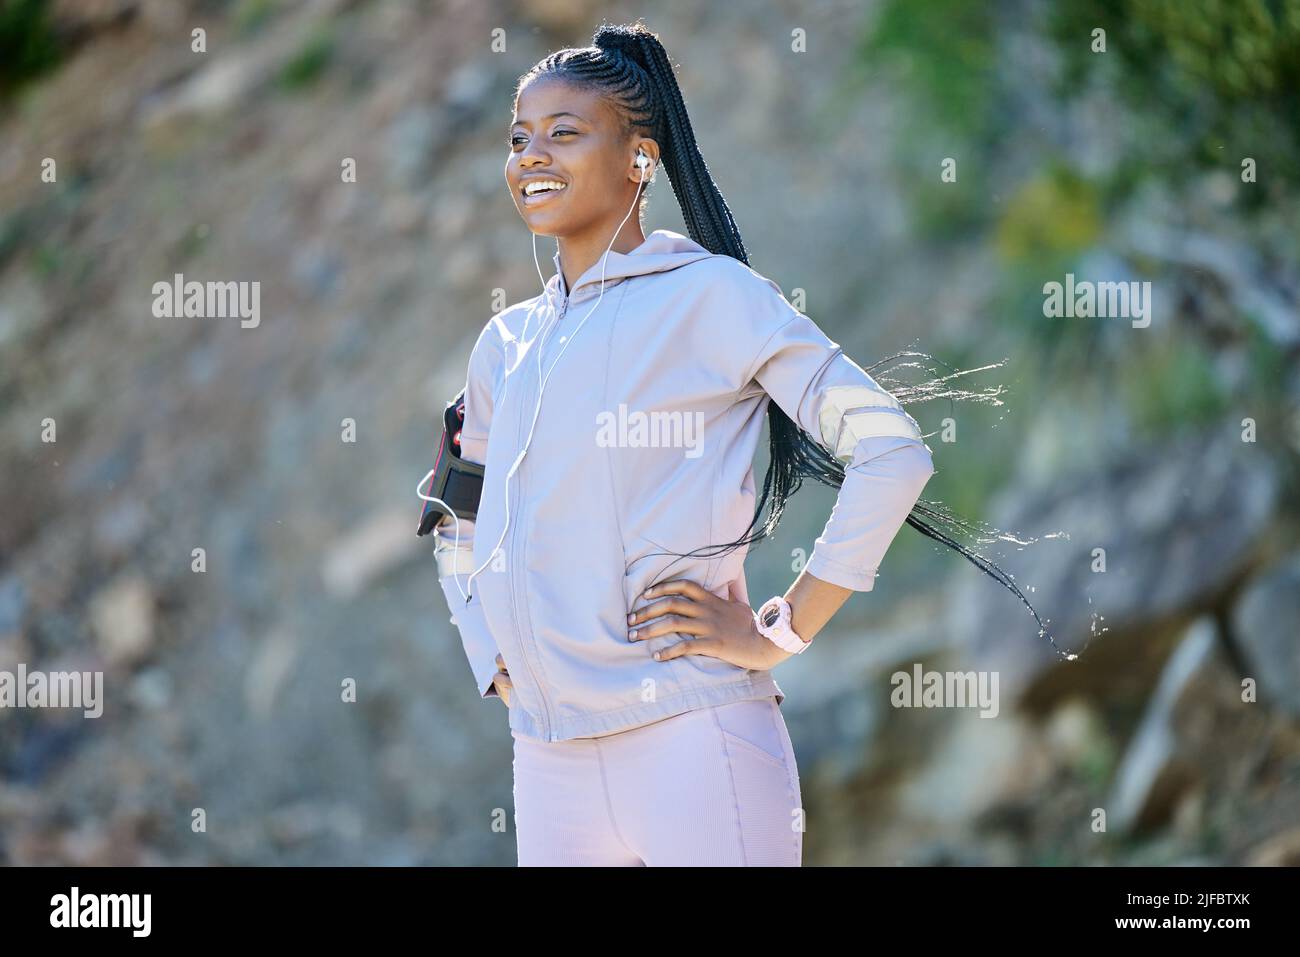 Jeune femme afro-américaine heureuse en randonnée sur une montagne, en faisant une pause pour se reposer. Noir de forme ethnique jeune femme souriante travaillant dans la nature. Athlétique Banque D'Images